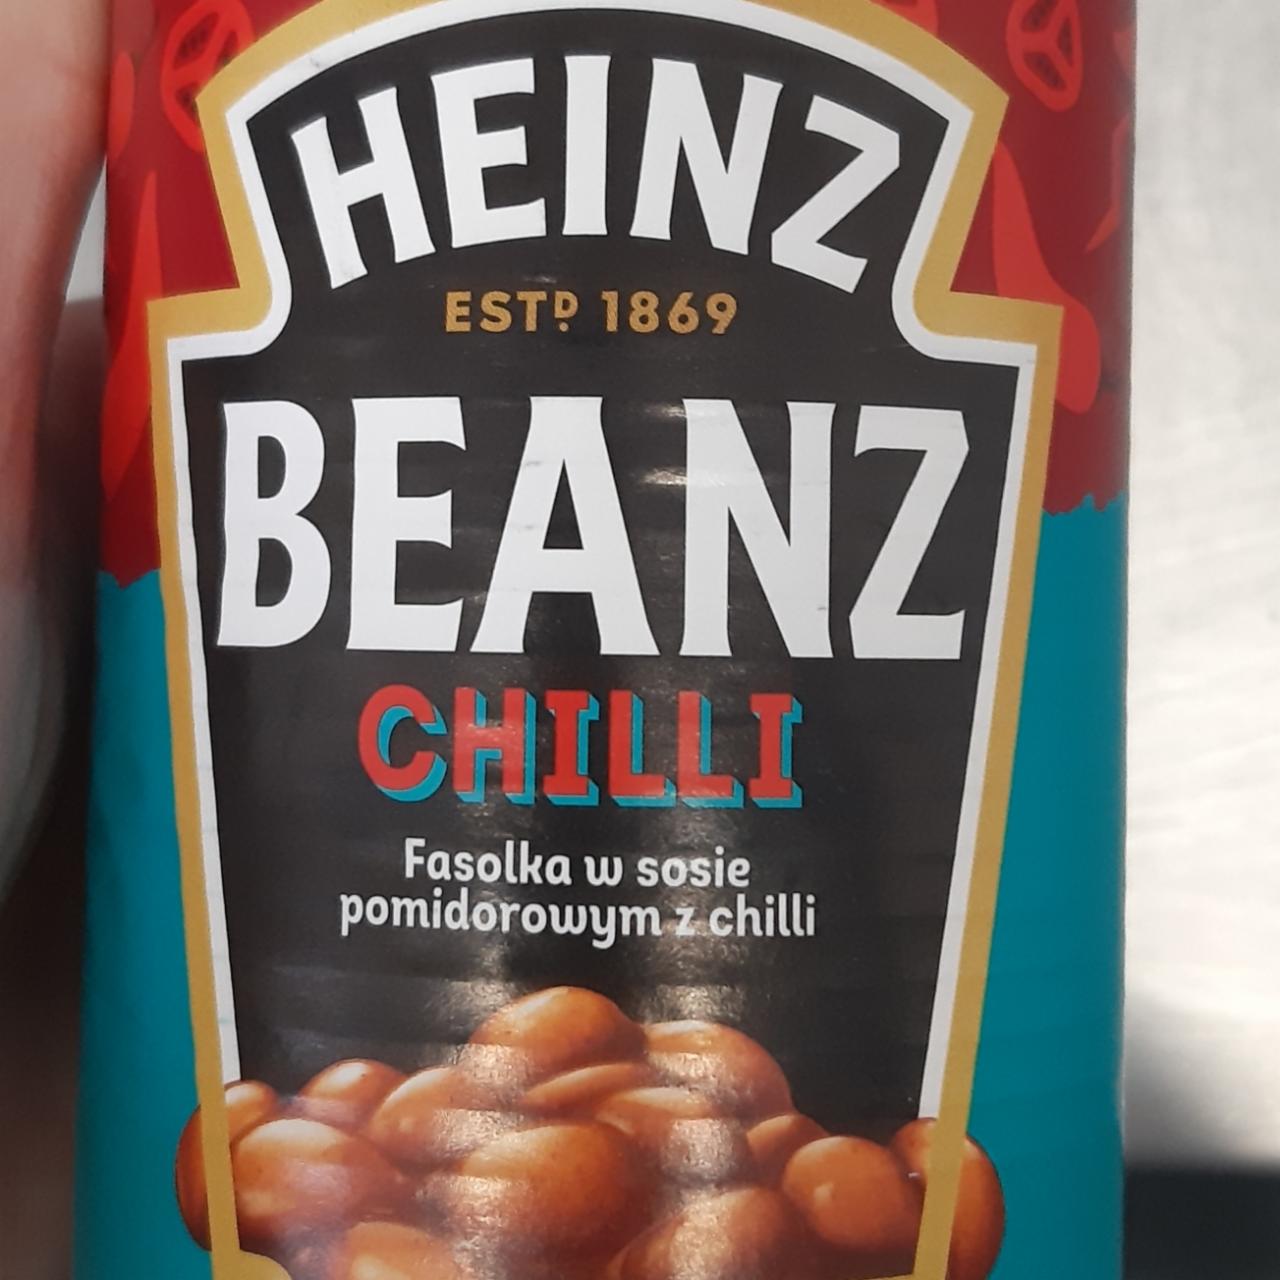 Фото - Фасоль в томатном соусе с чили Beans Chili Heinz